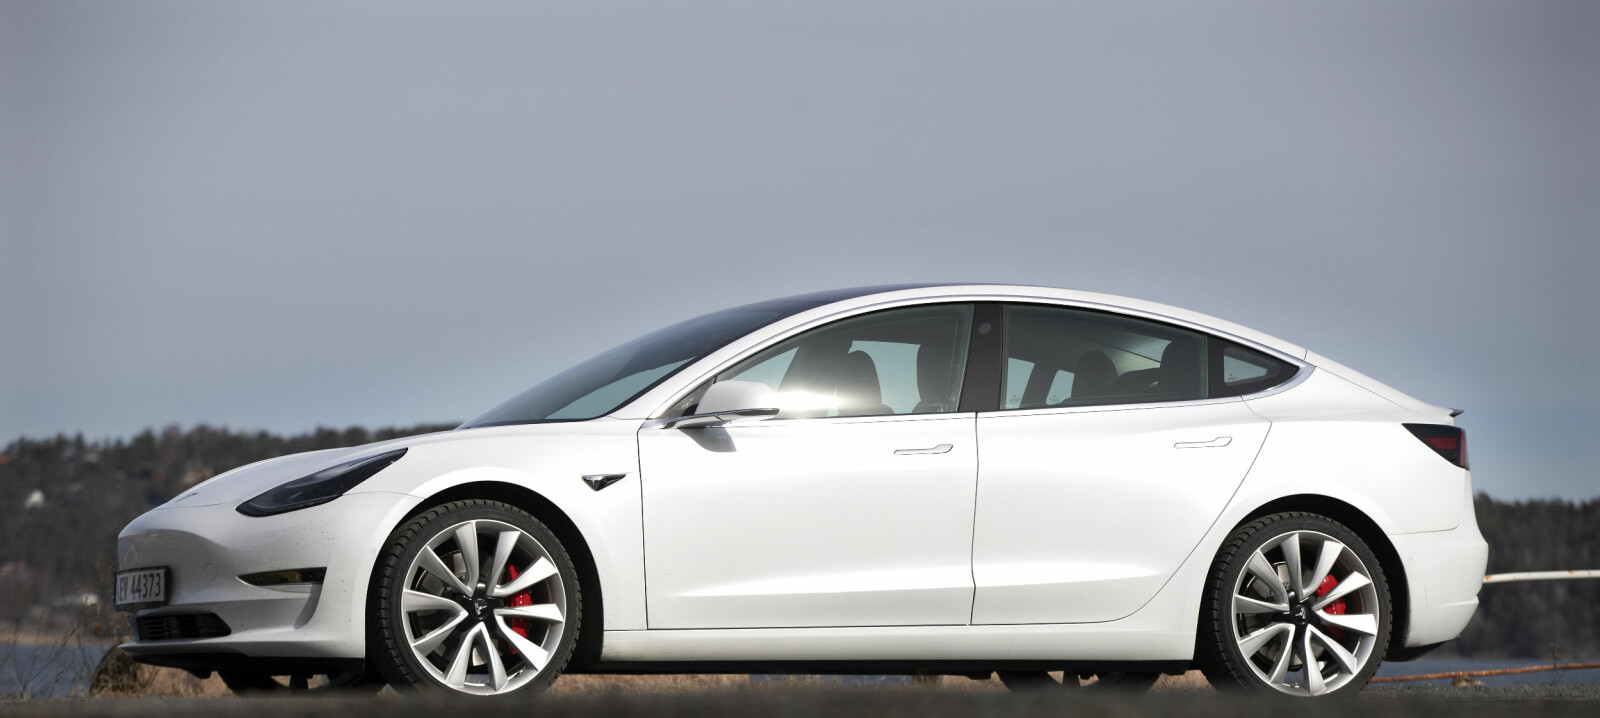 <b>LEKKER MODEL 3:</b> Ikke vanskelig å falle for utseendet til Tesla Model 3 Performance